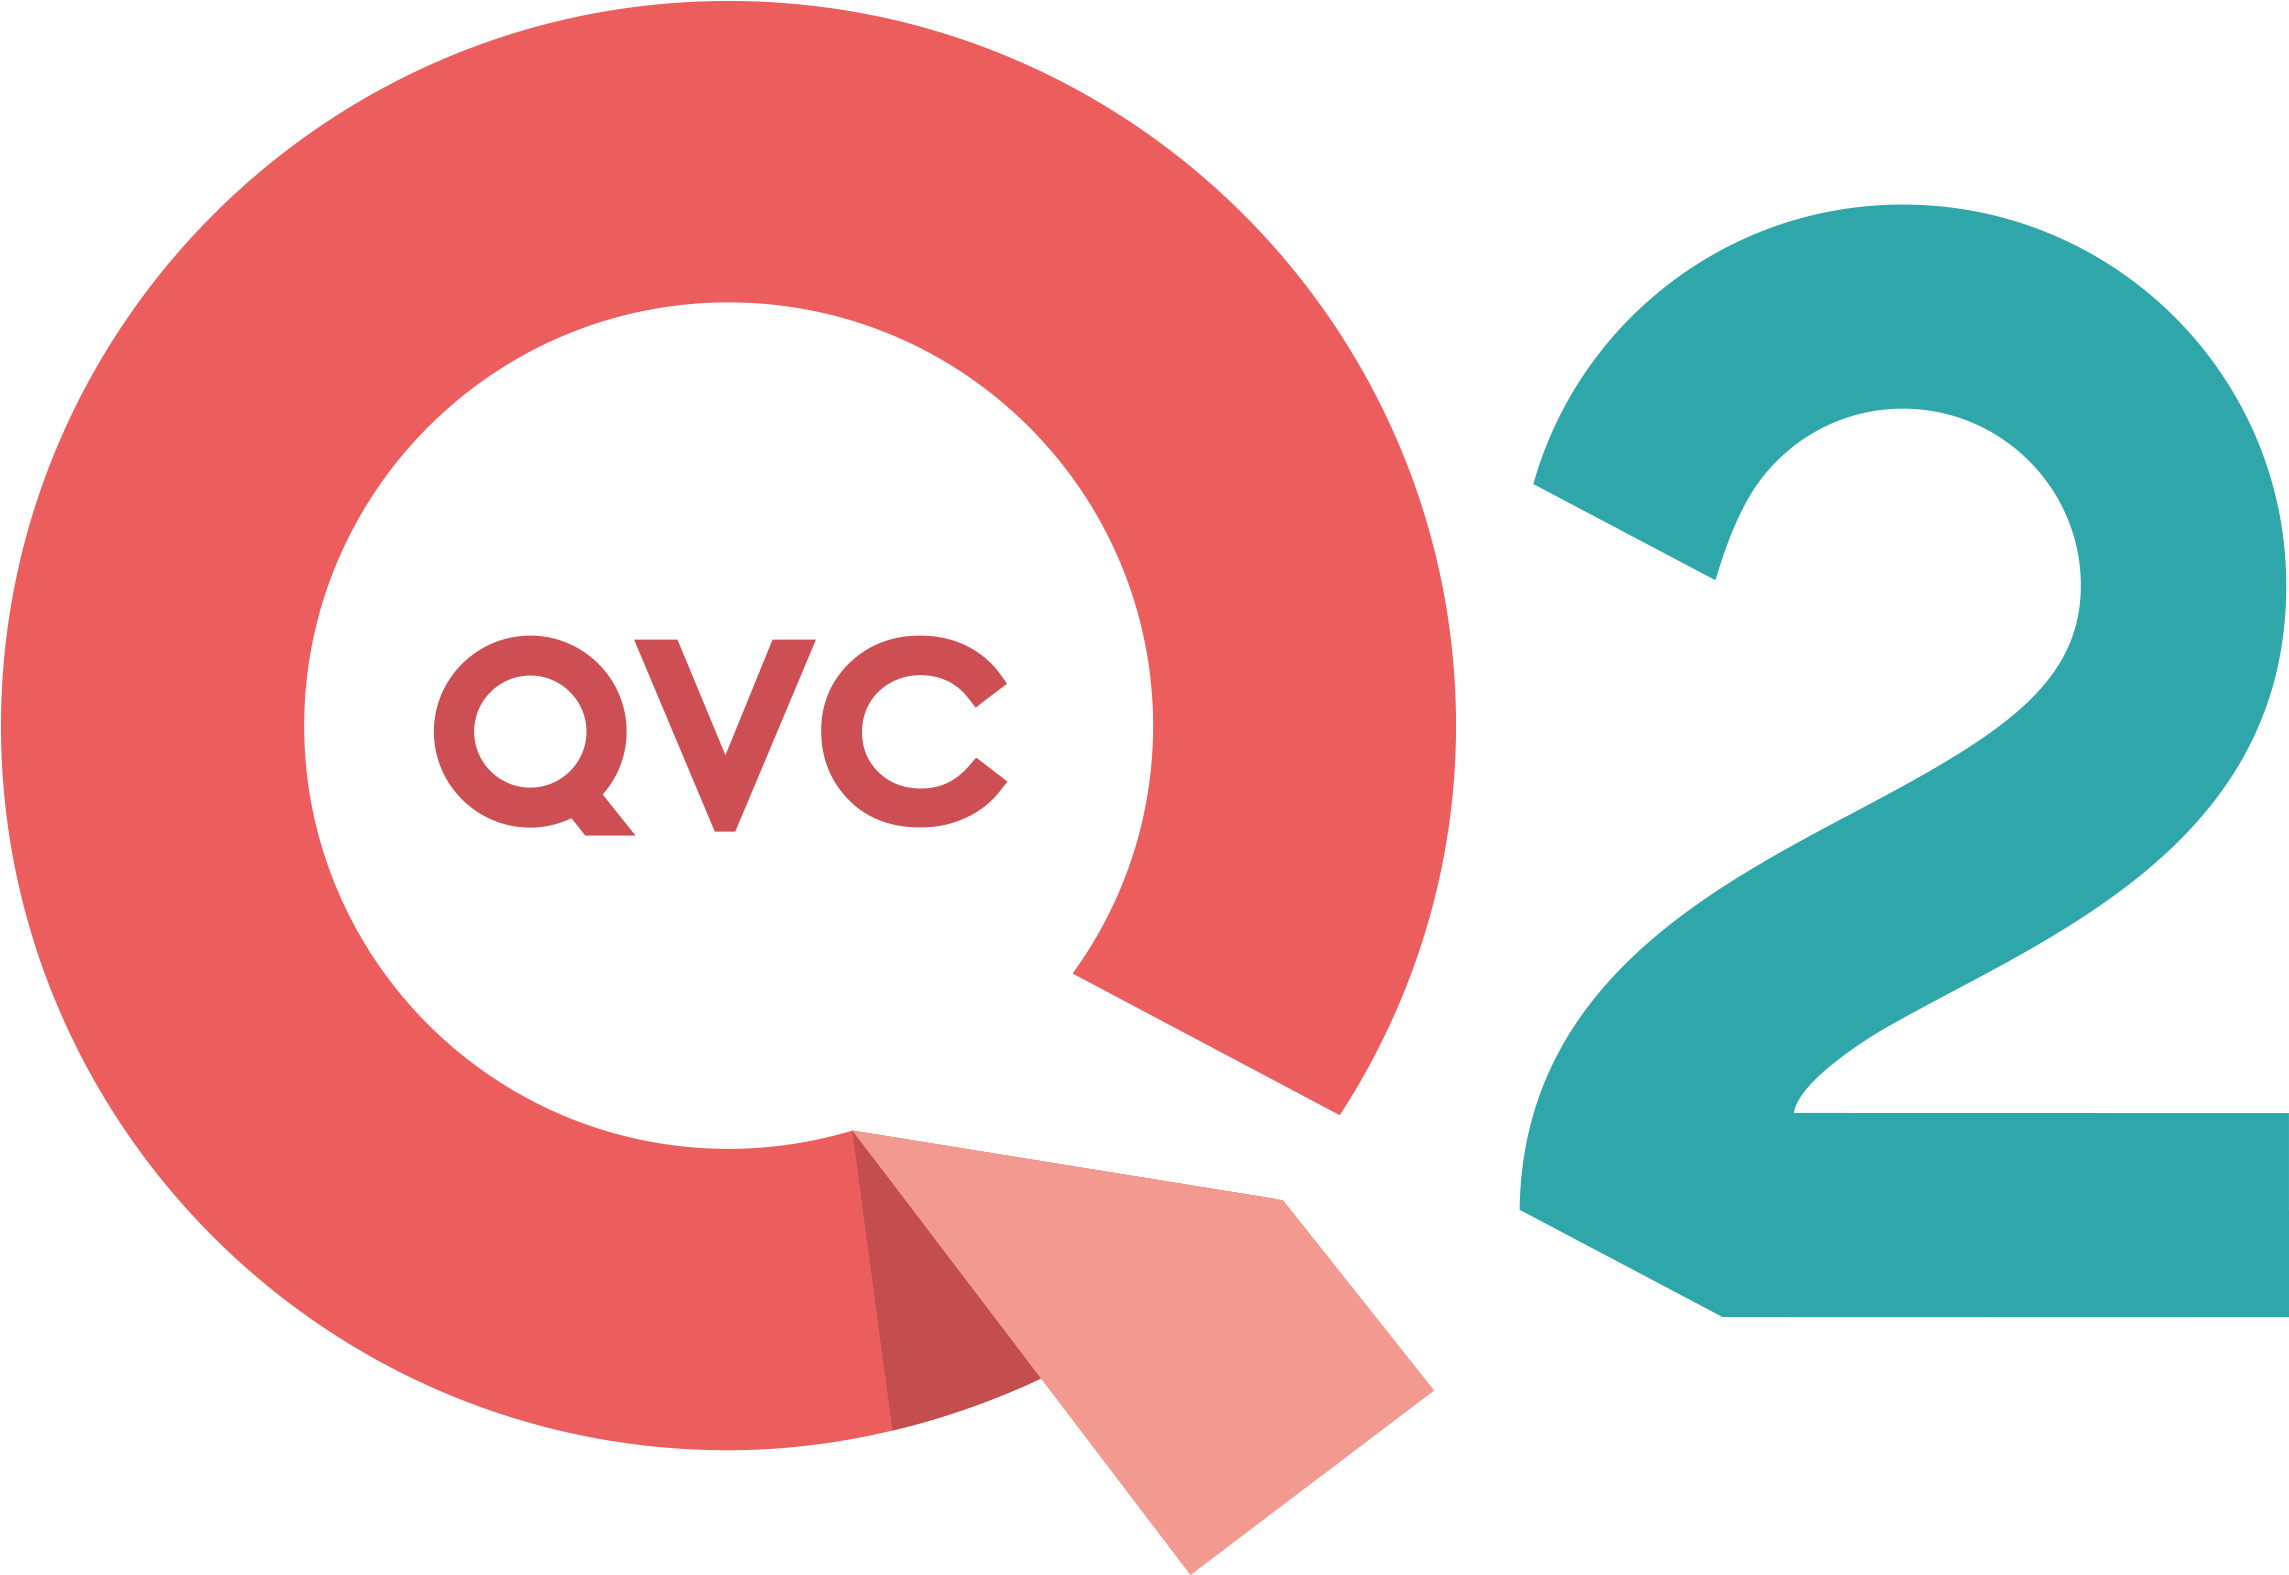 No Logo - Qvc Logo 2015 (2400x2400)